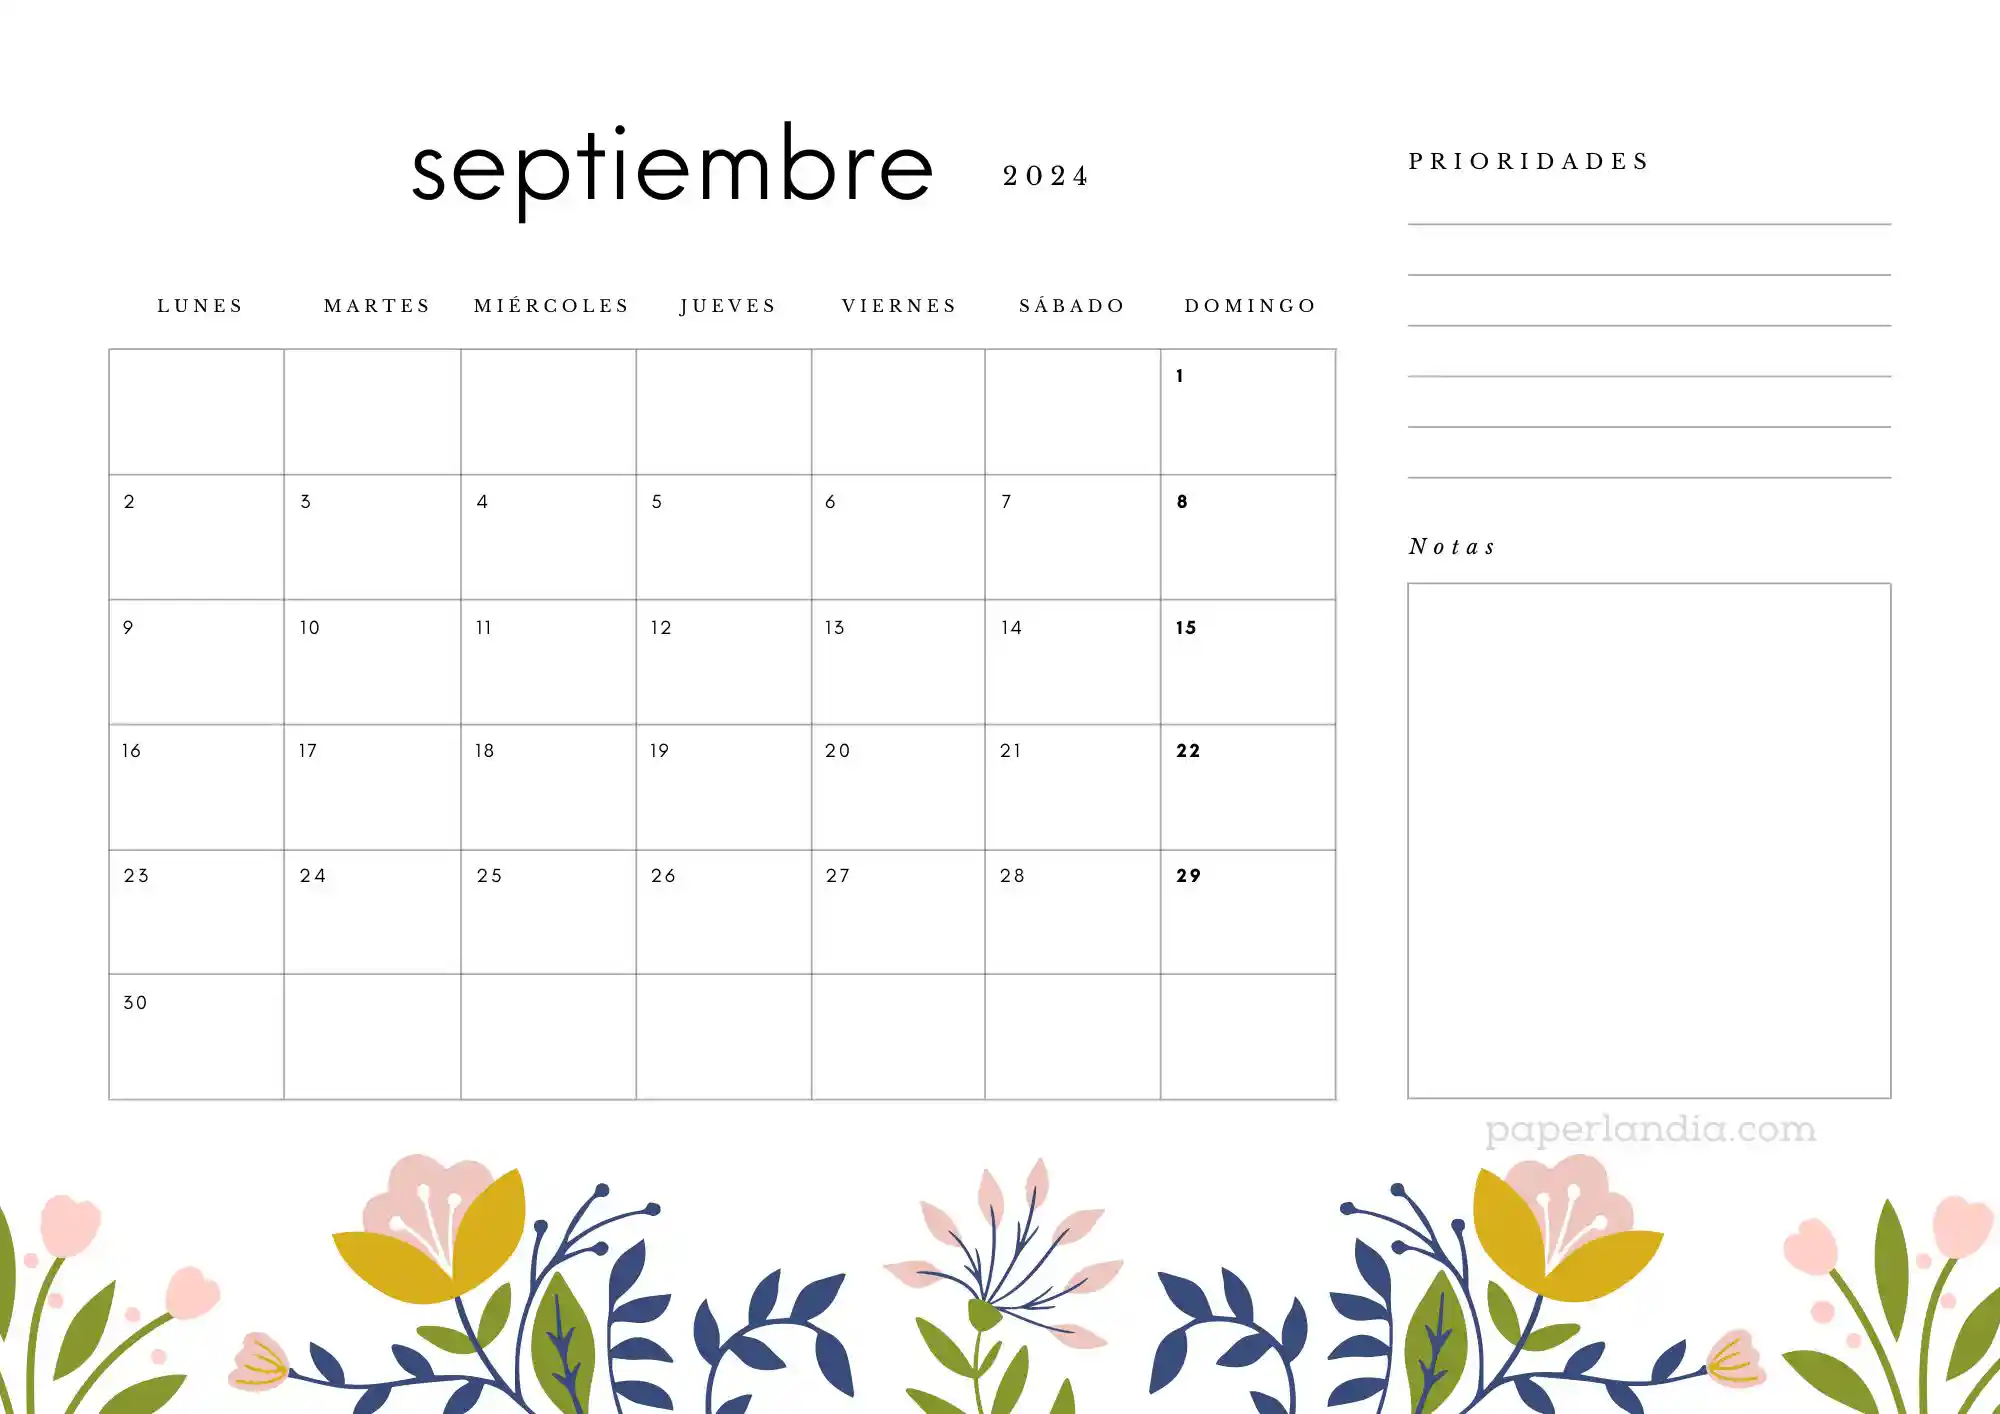 Calendario septiembre 2024 horizontal con prioridades notas y flores escandinavas